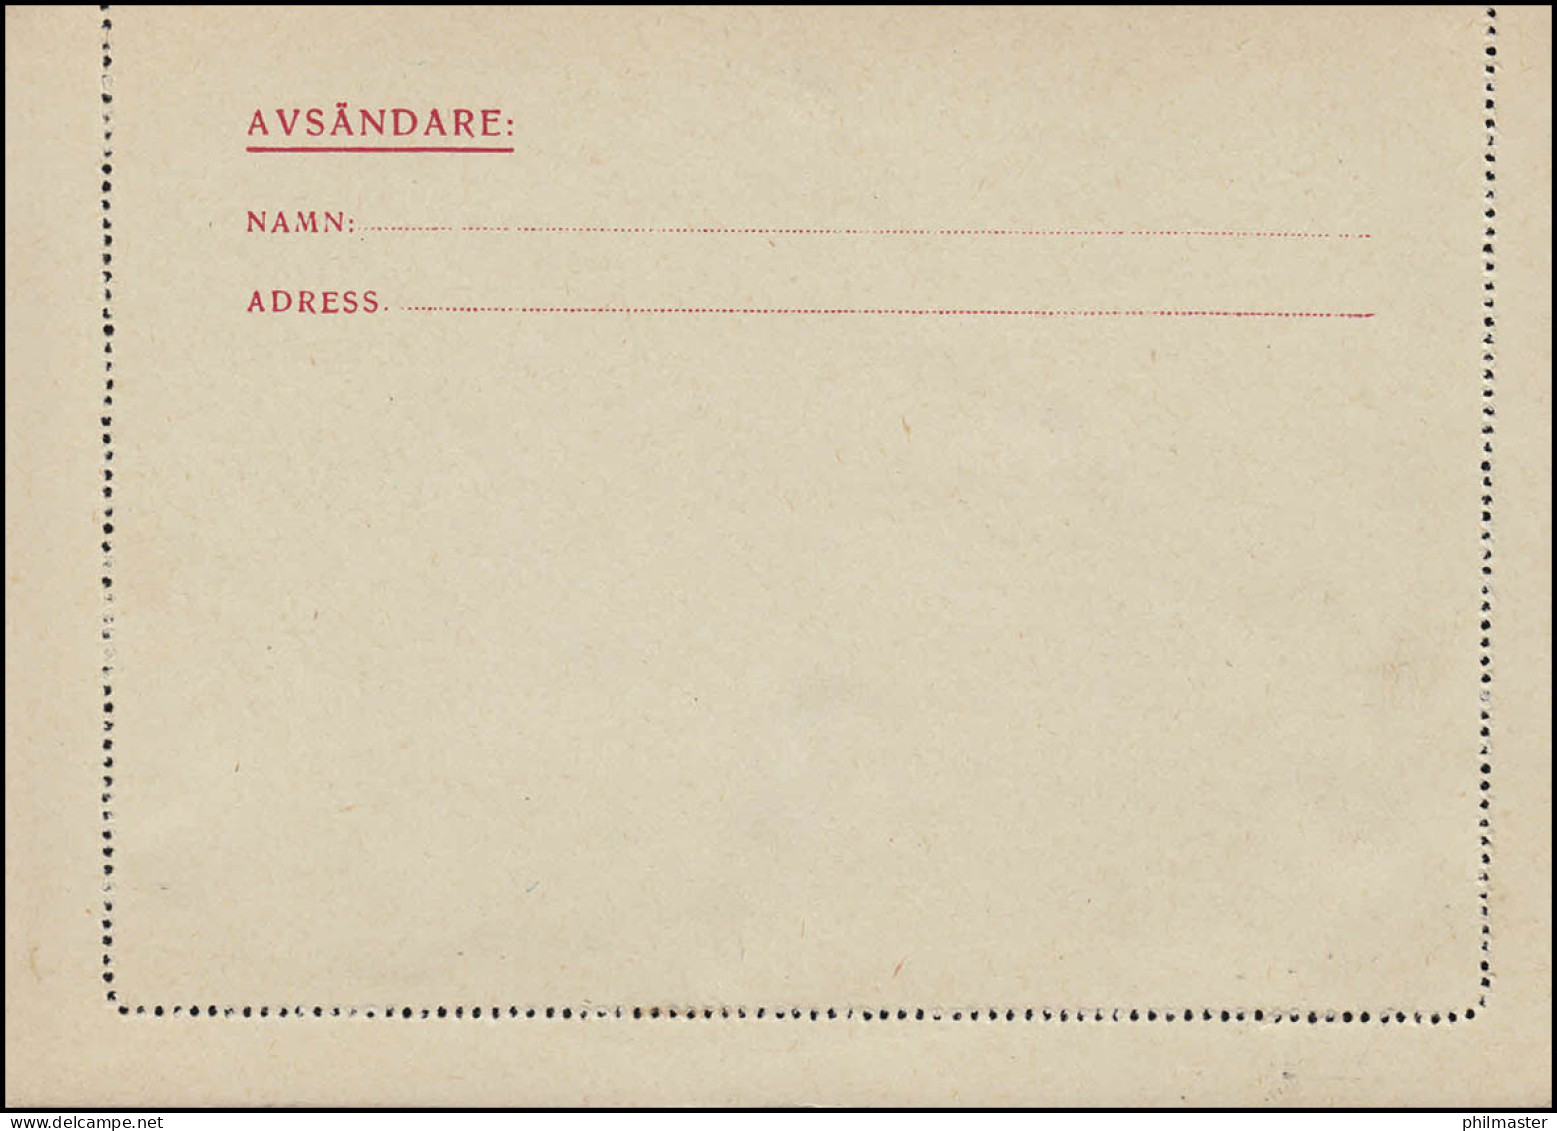 Kartenbrief K 27IW KORTBREV 15 Öre, STOCKHOLM 10.10.1930 Nach Göteborg - Interi Postali